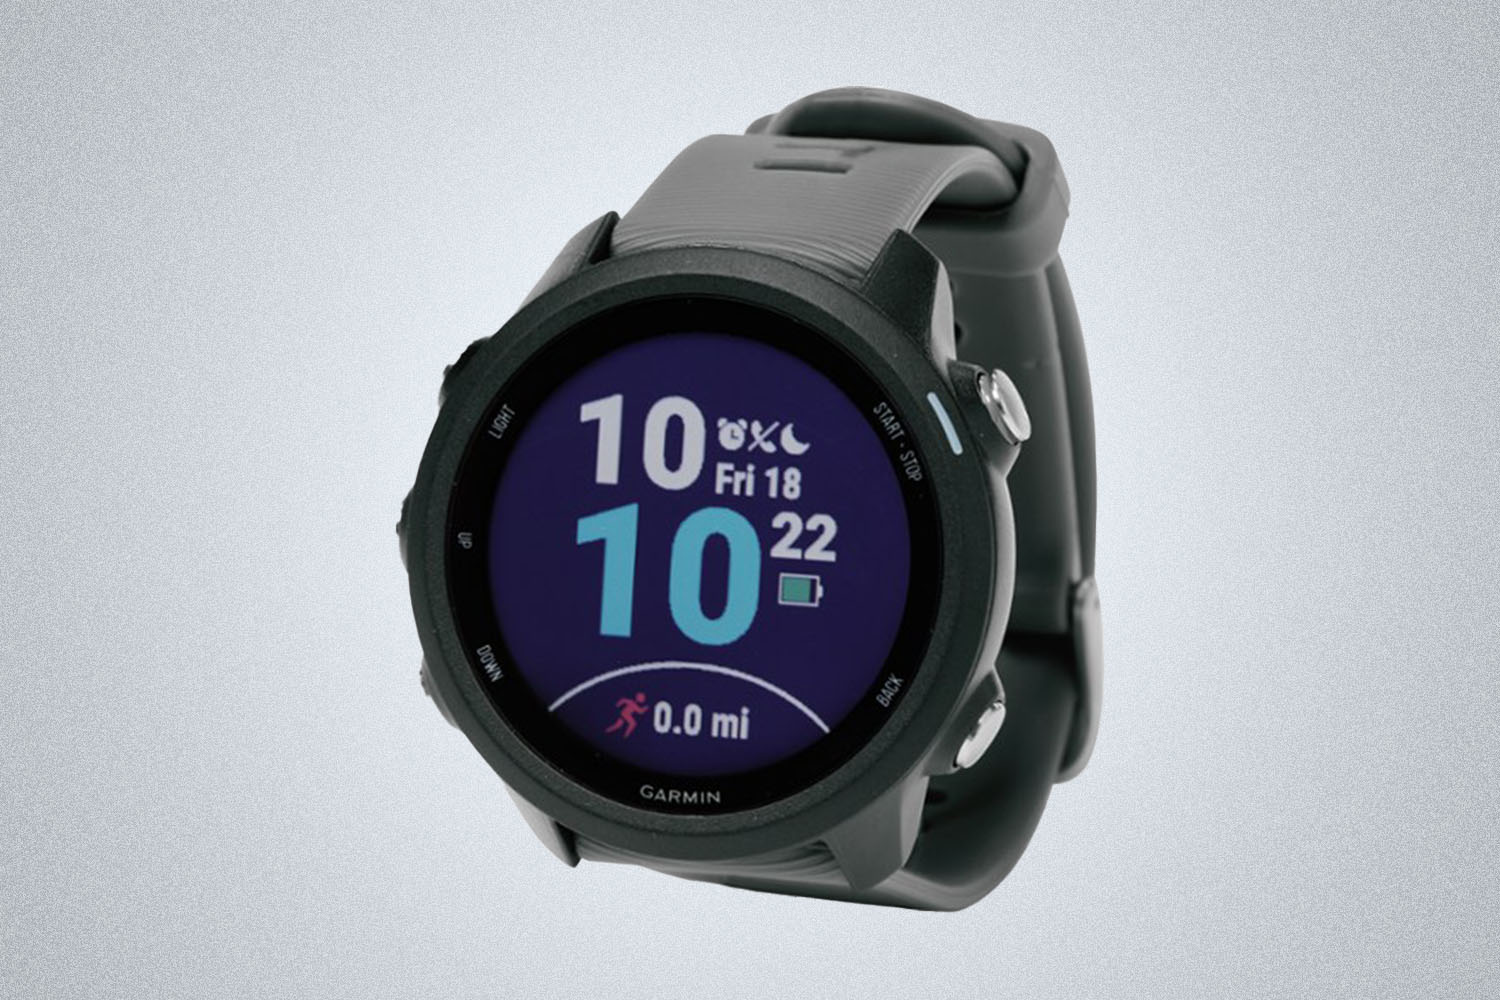 A Garmin GPS watch on a grey background